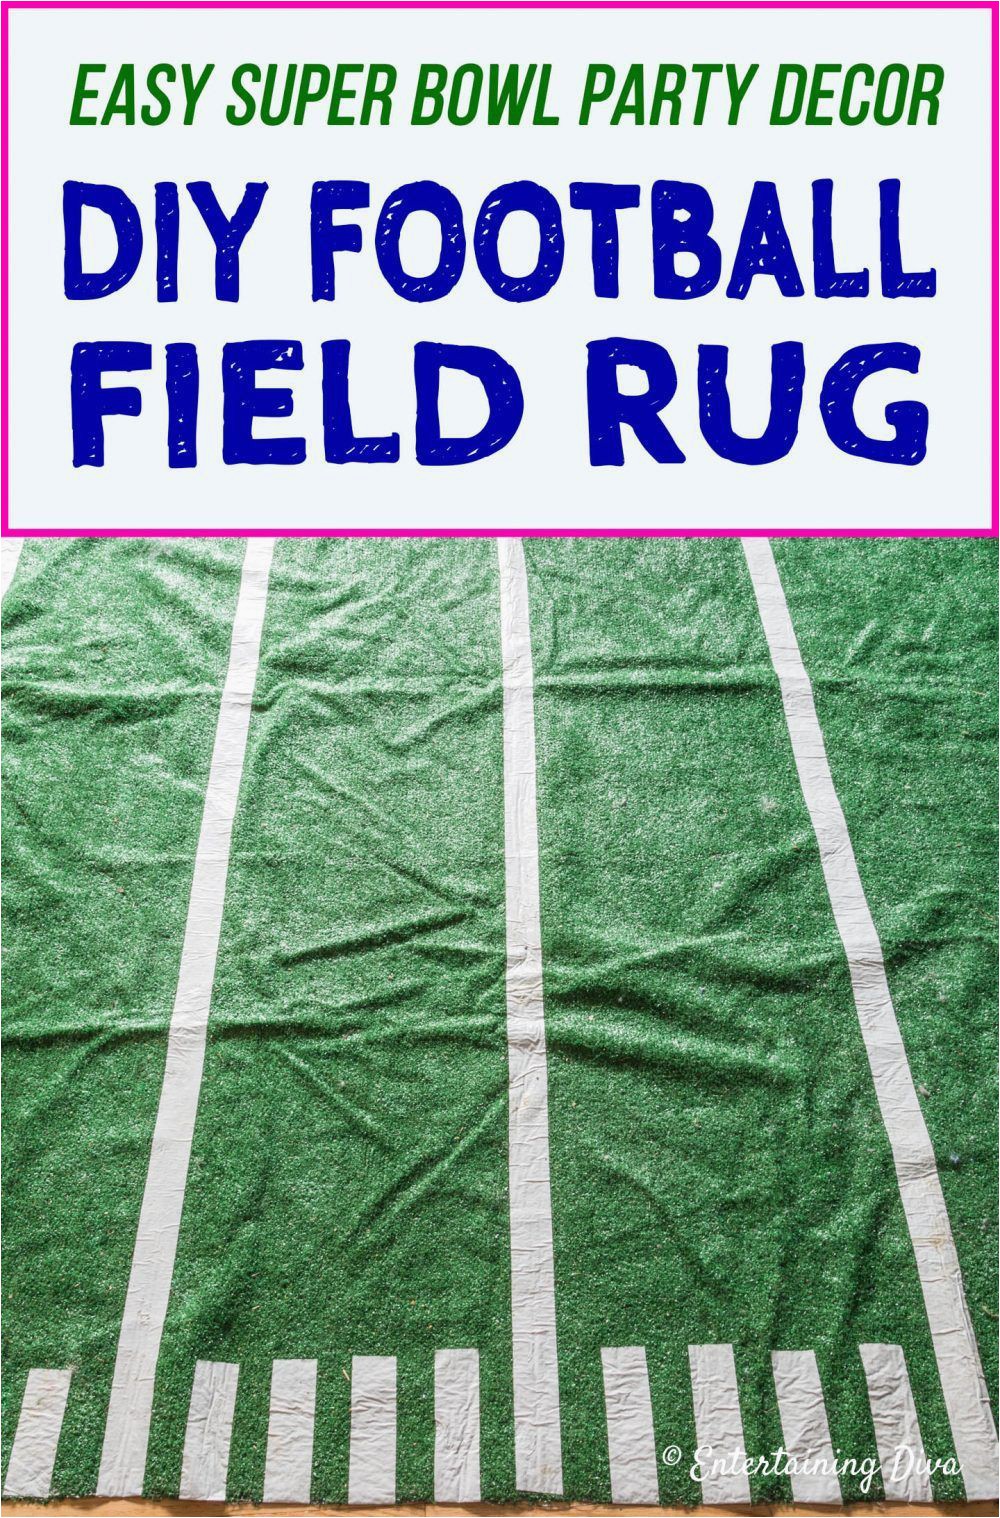 Dallas Cowboys Football Field area Rug Easy Football Party Decor Diy Football Field area Rug